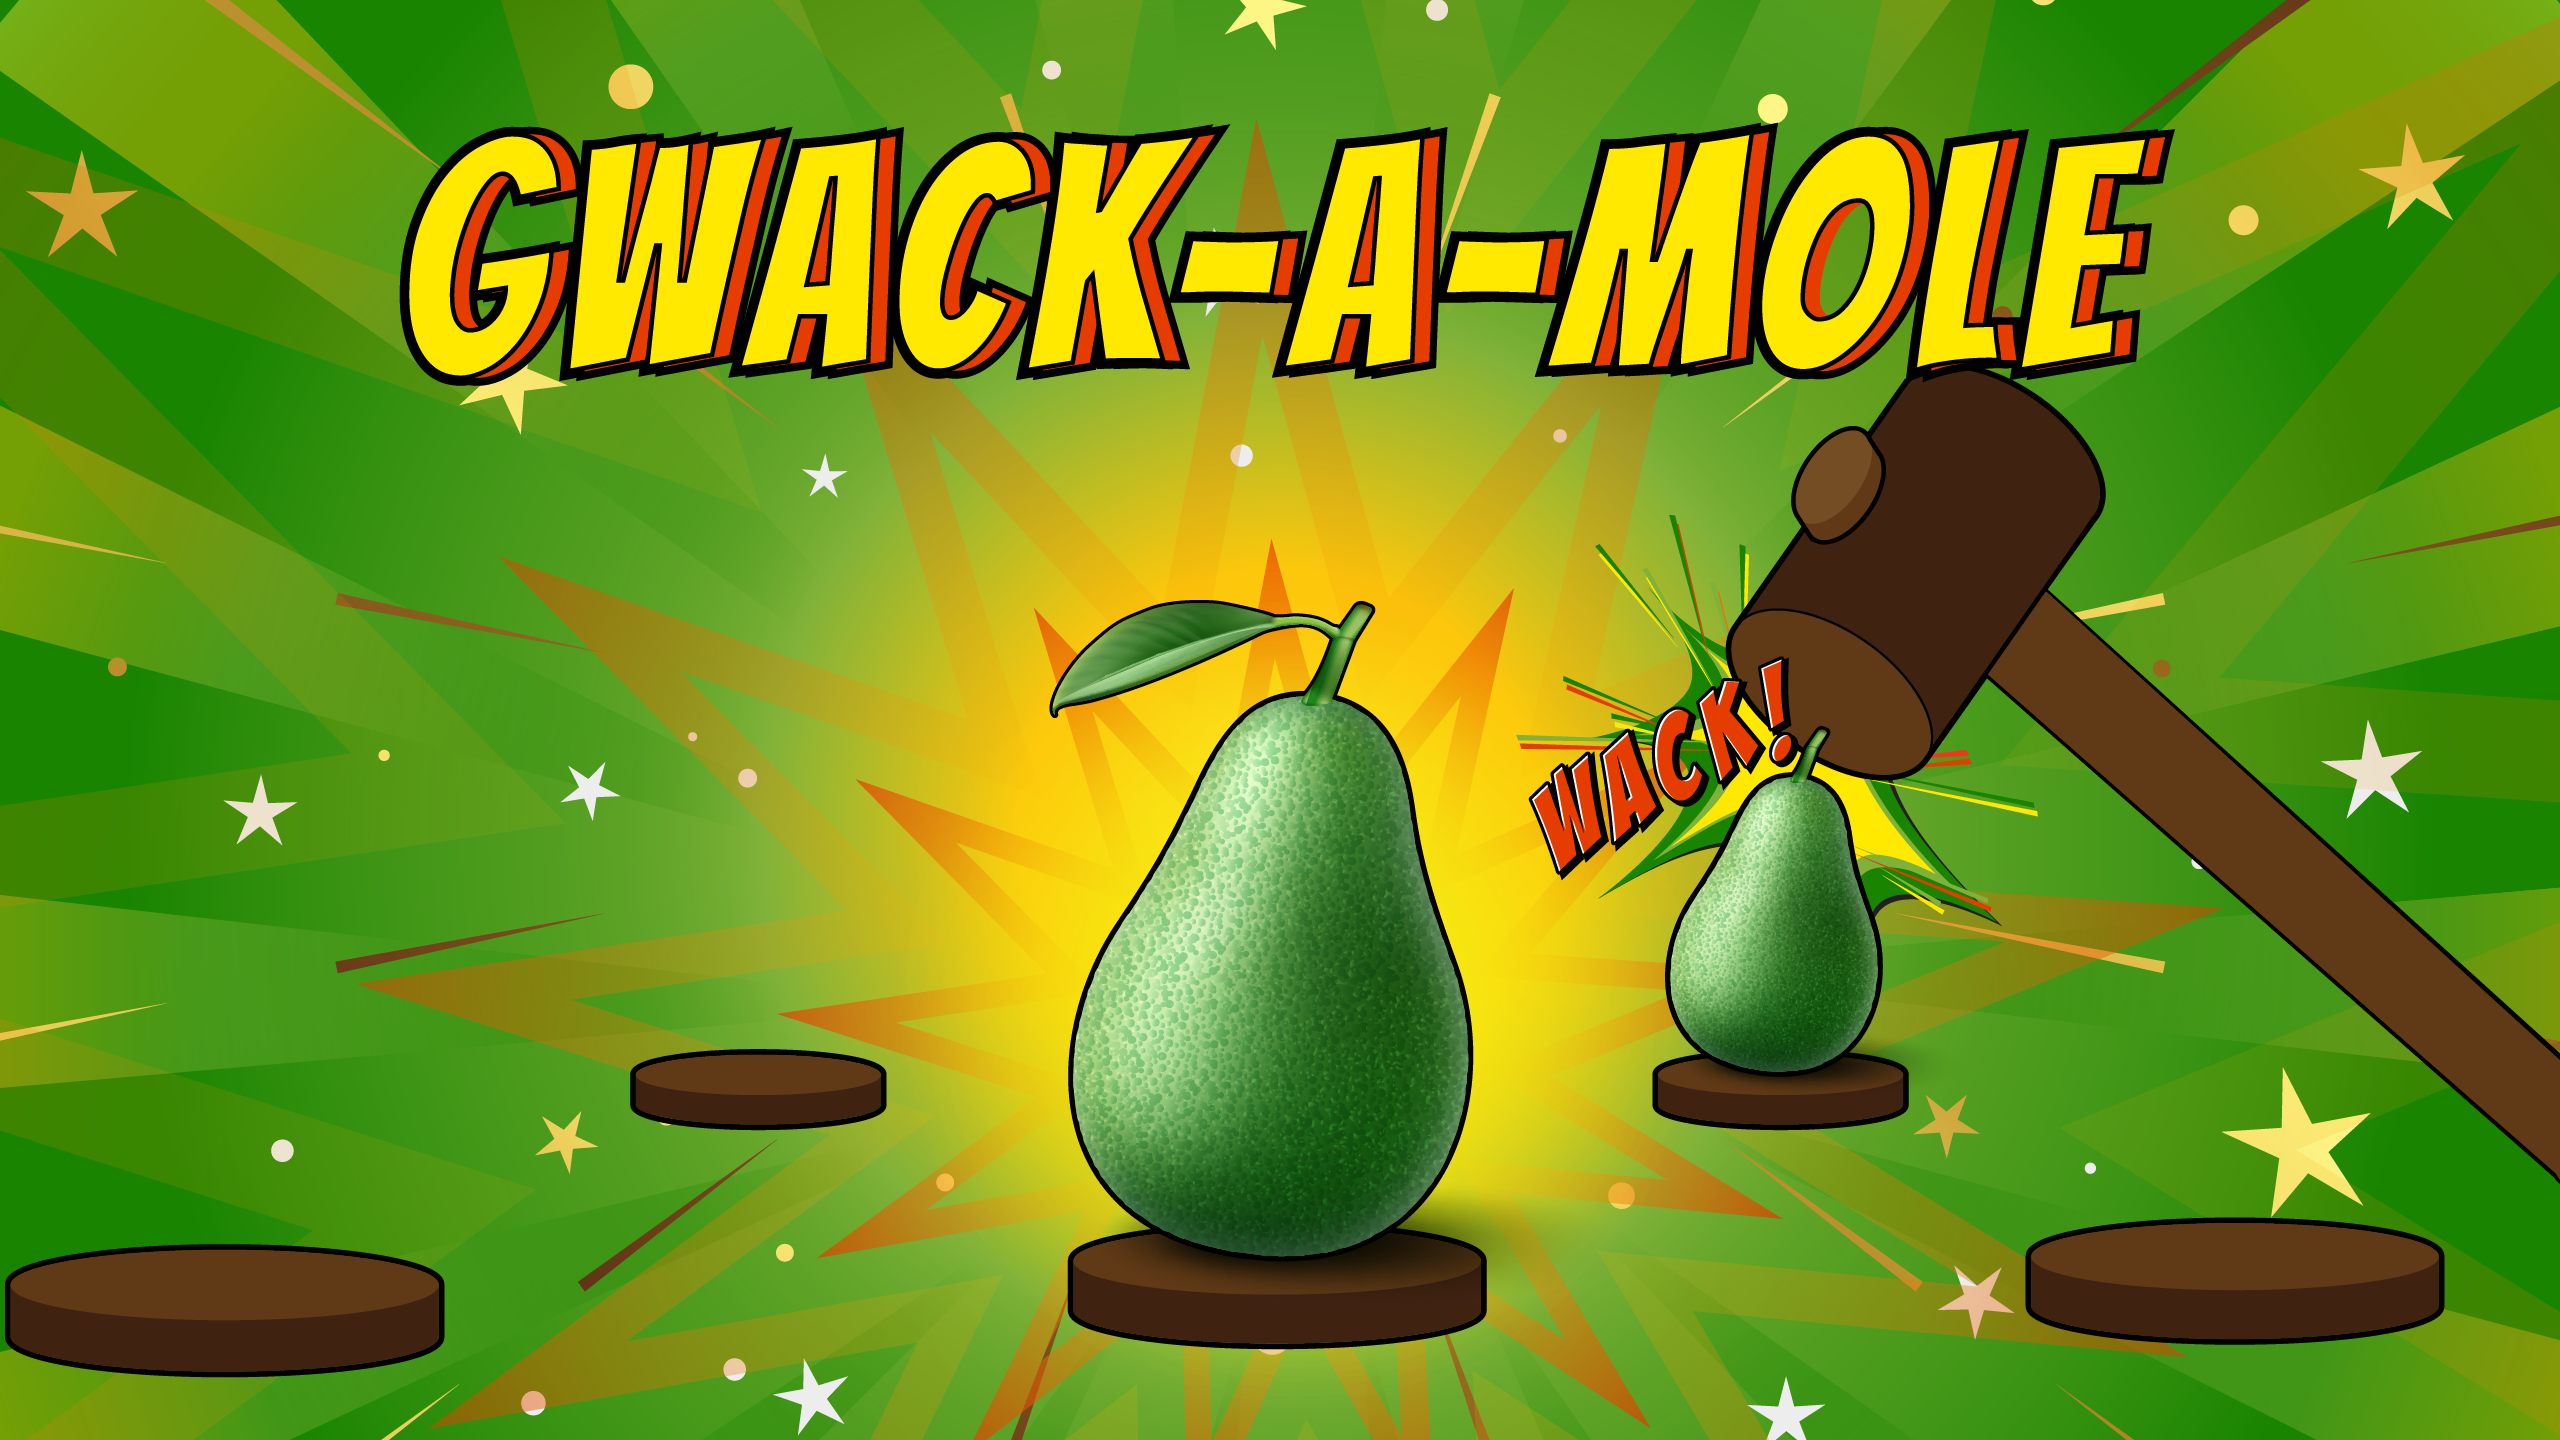 Whack first! - Fight the moles  Aplicações de download da